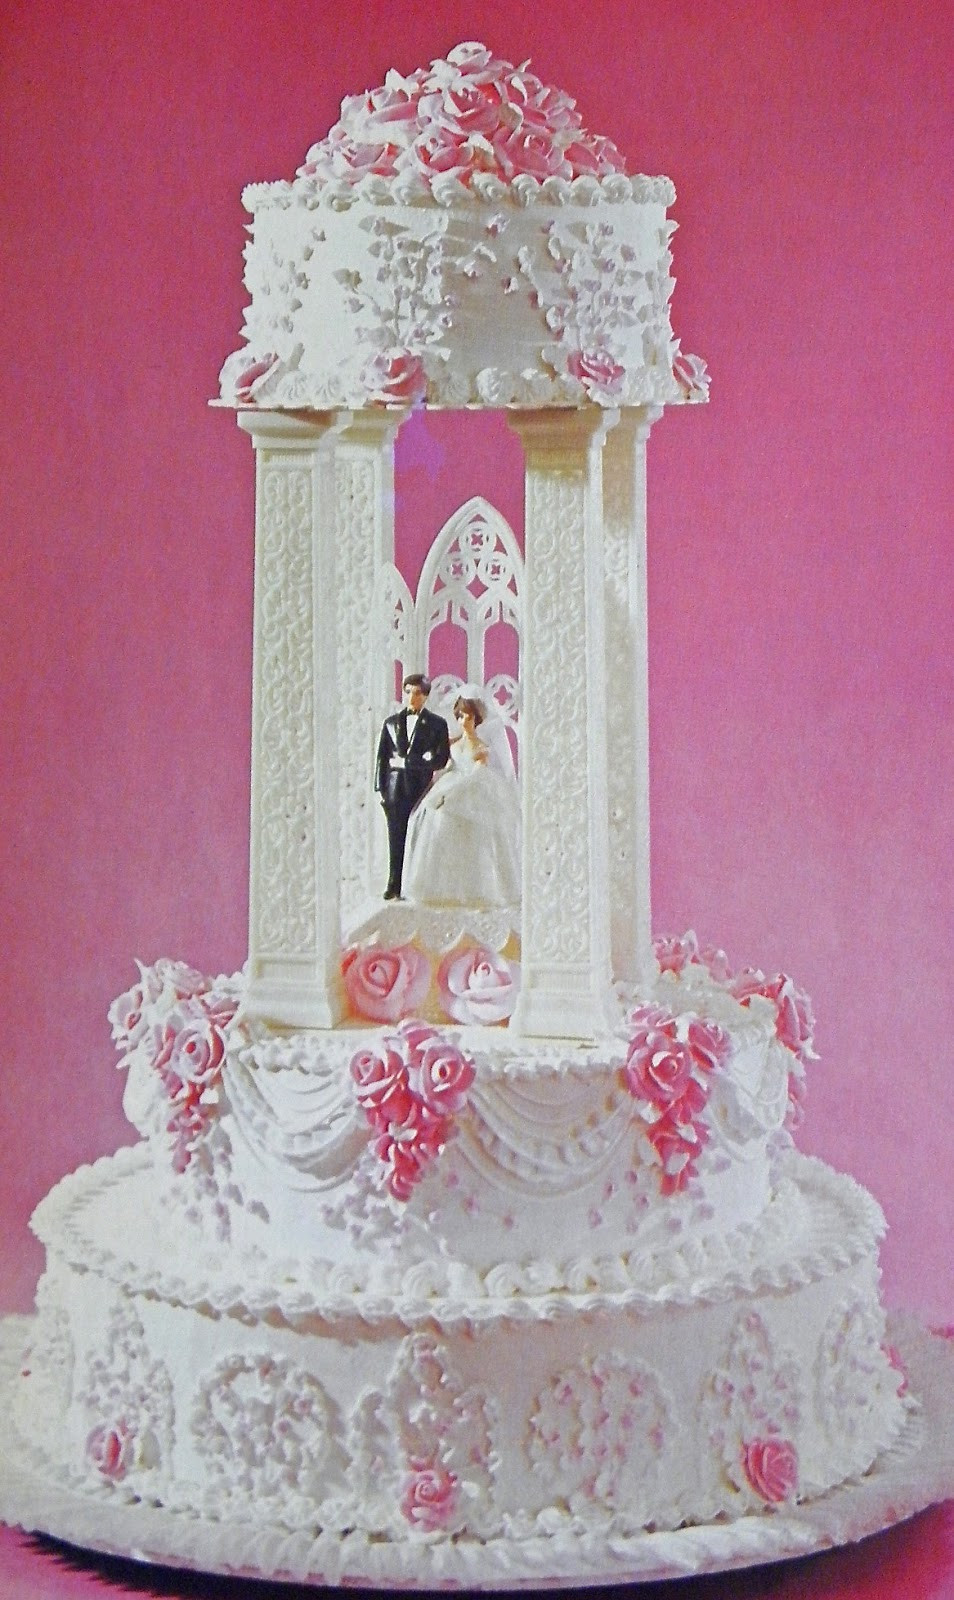 Wilton Wedding Cakes Recipes
 Good Things by David Vintage Wilton Wedding Cakes